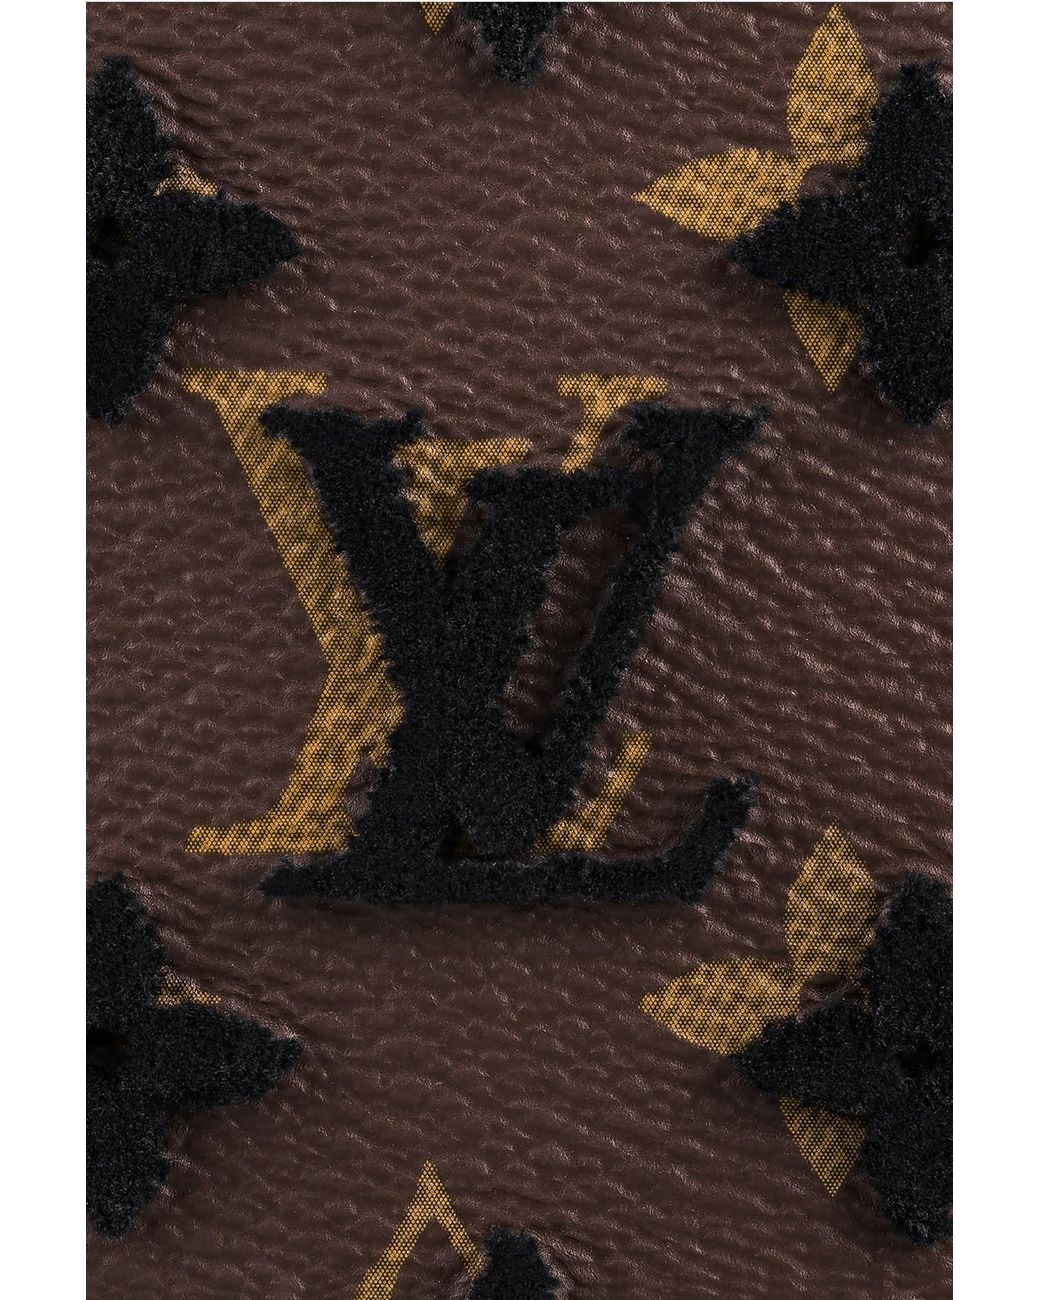 Authentic LOUIS VUITTON Monogram Vertical Soft trunk M45044 Shoulder bag  #2